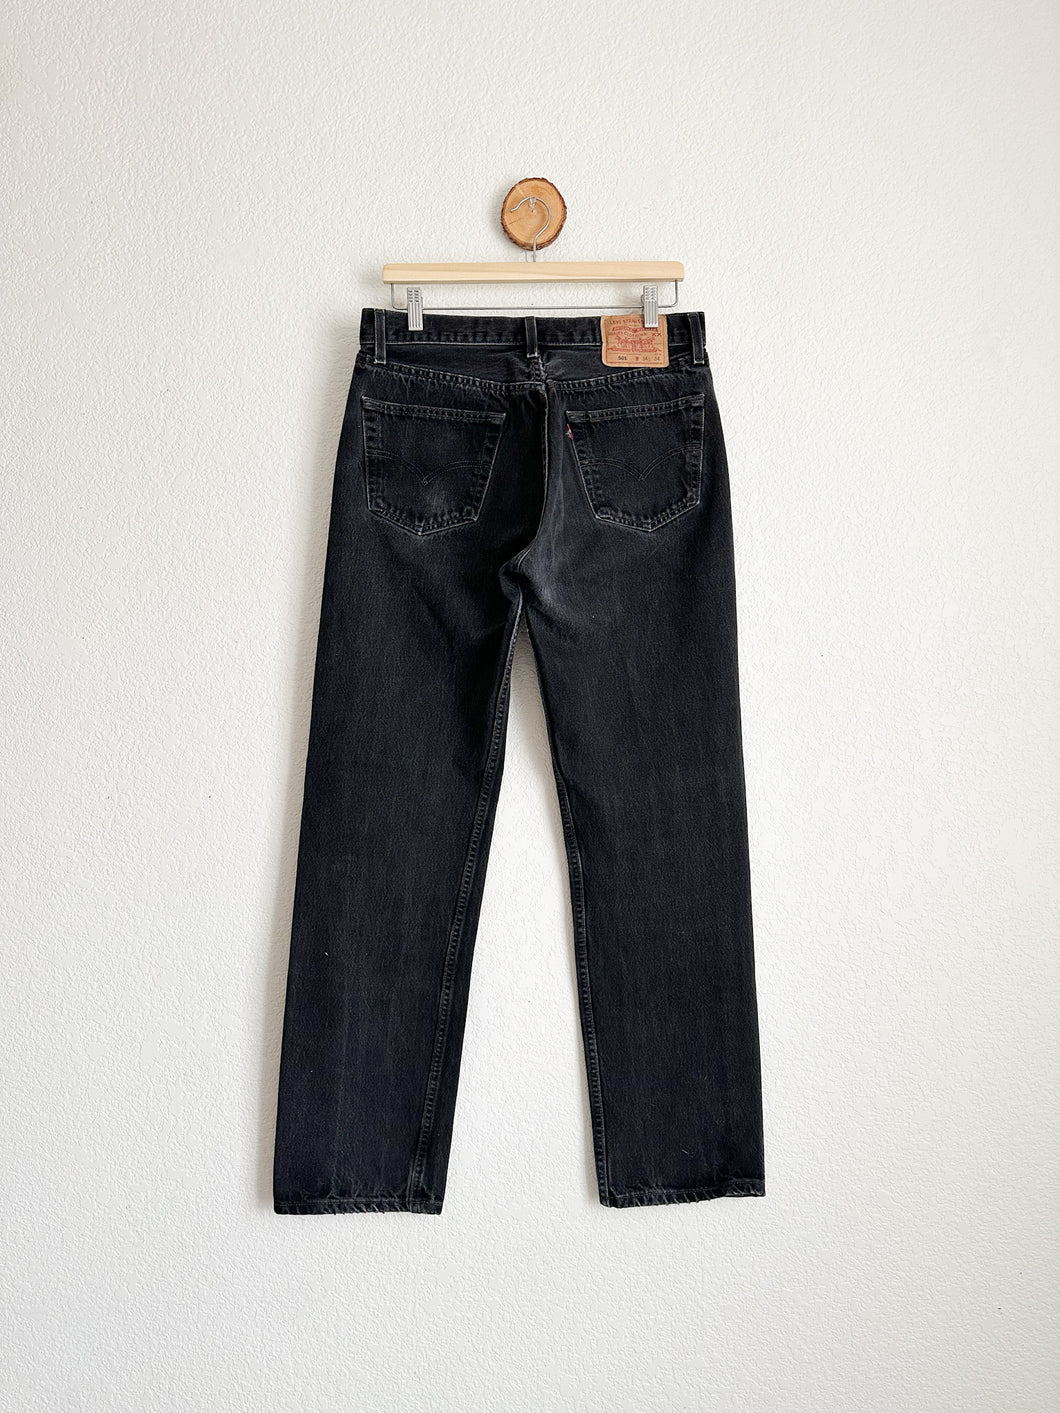 Vintage Levi's 501 Jeans - 32